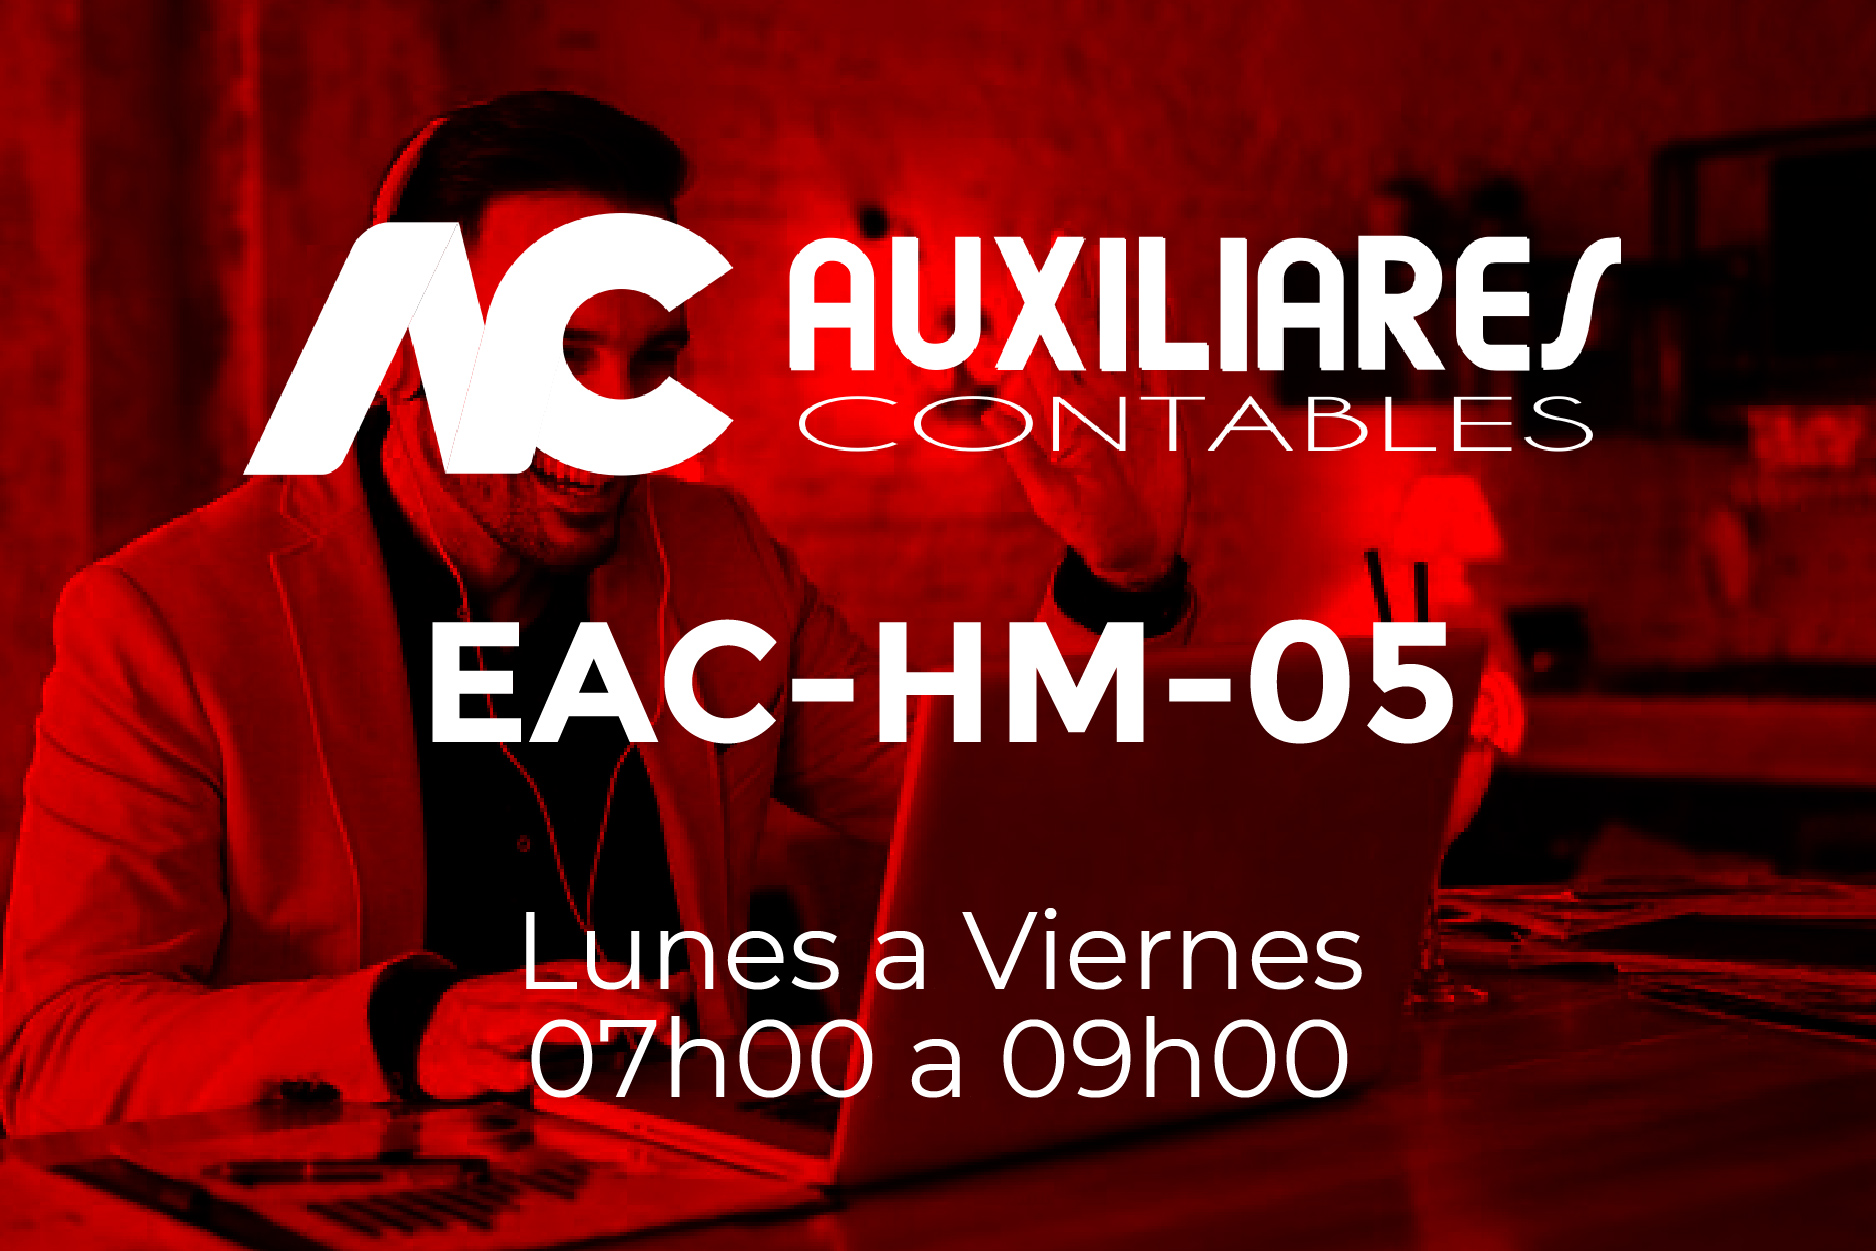 5 - AUXILIARES CONTABLES - LUNES A VIERNES - 07:00 A 09:00